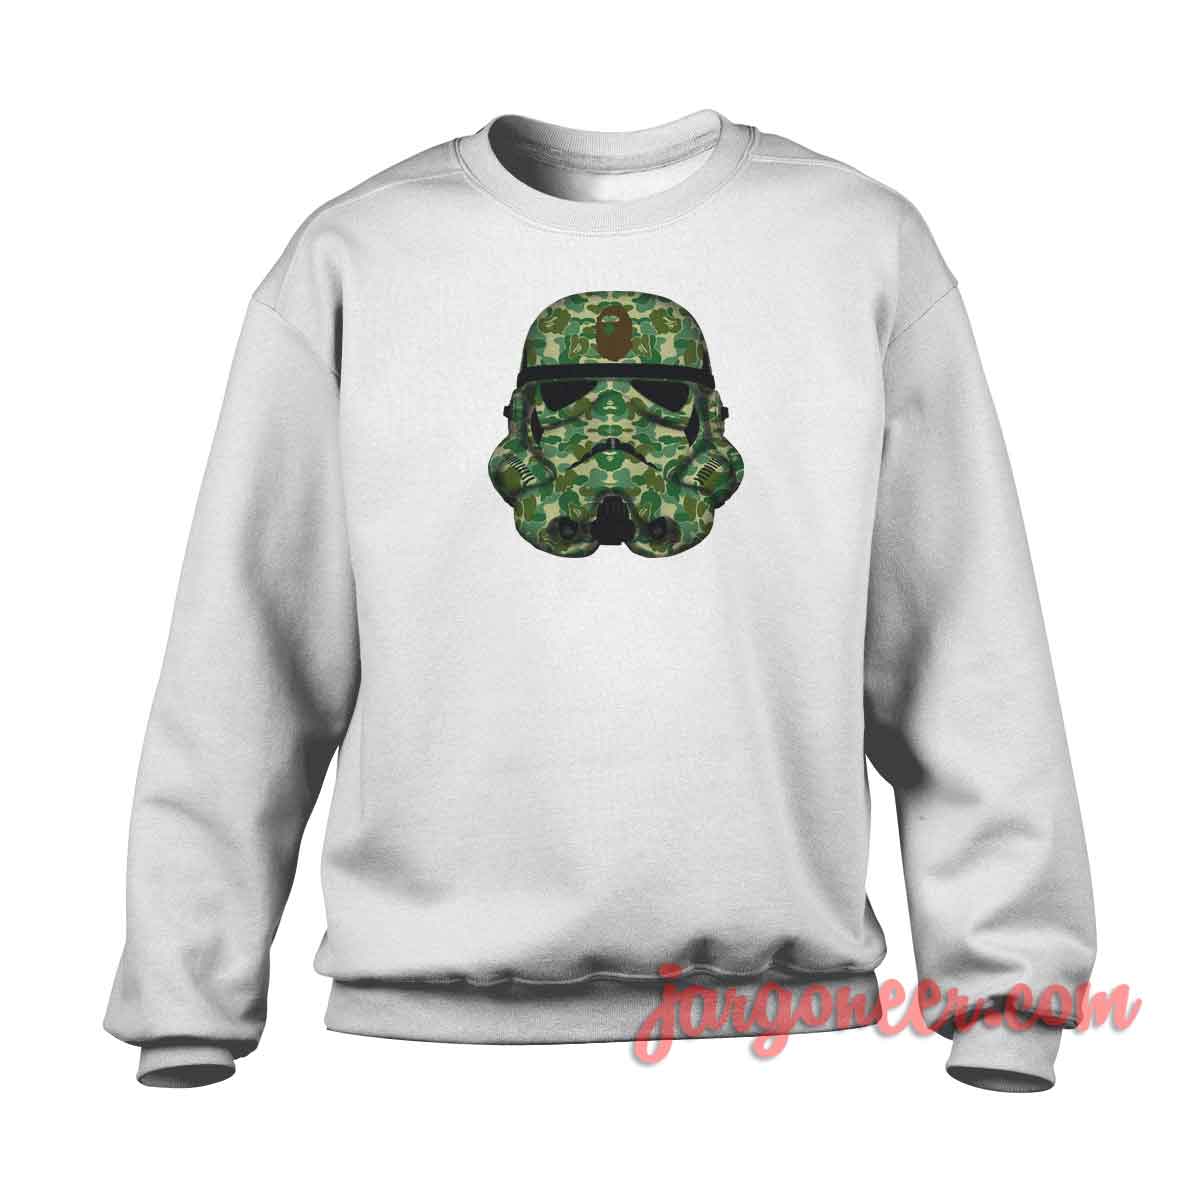 bape Stormtroopers - Shop Unique Graphic Cool Shirt Designs